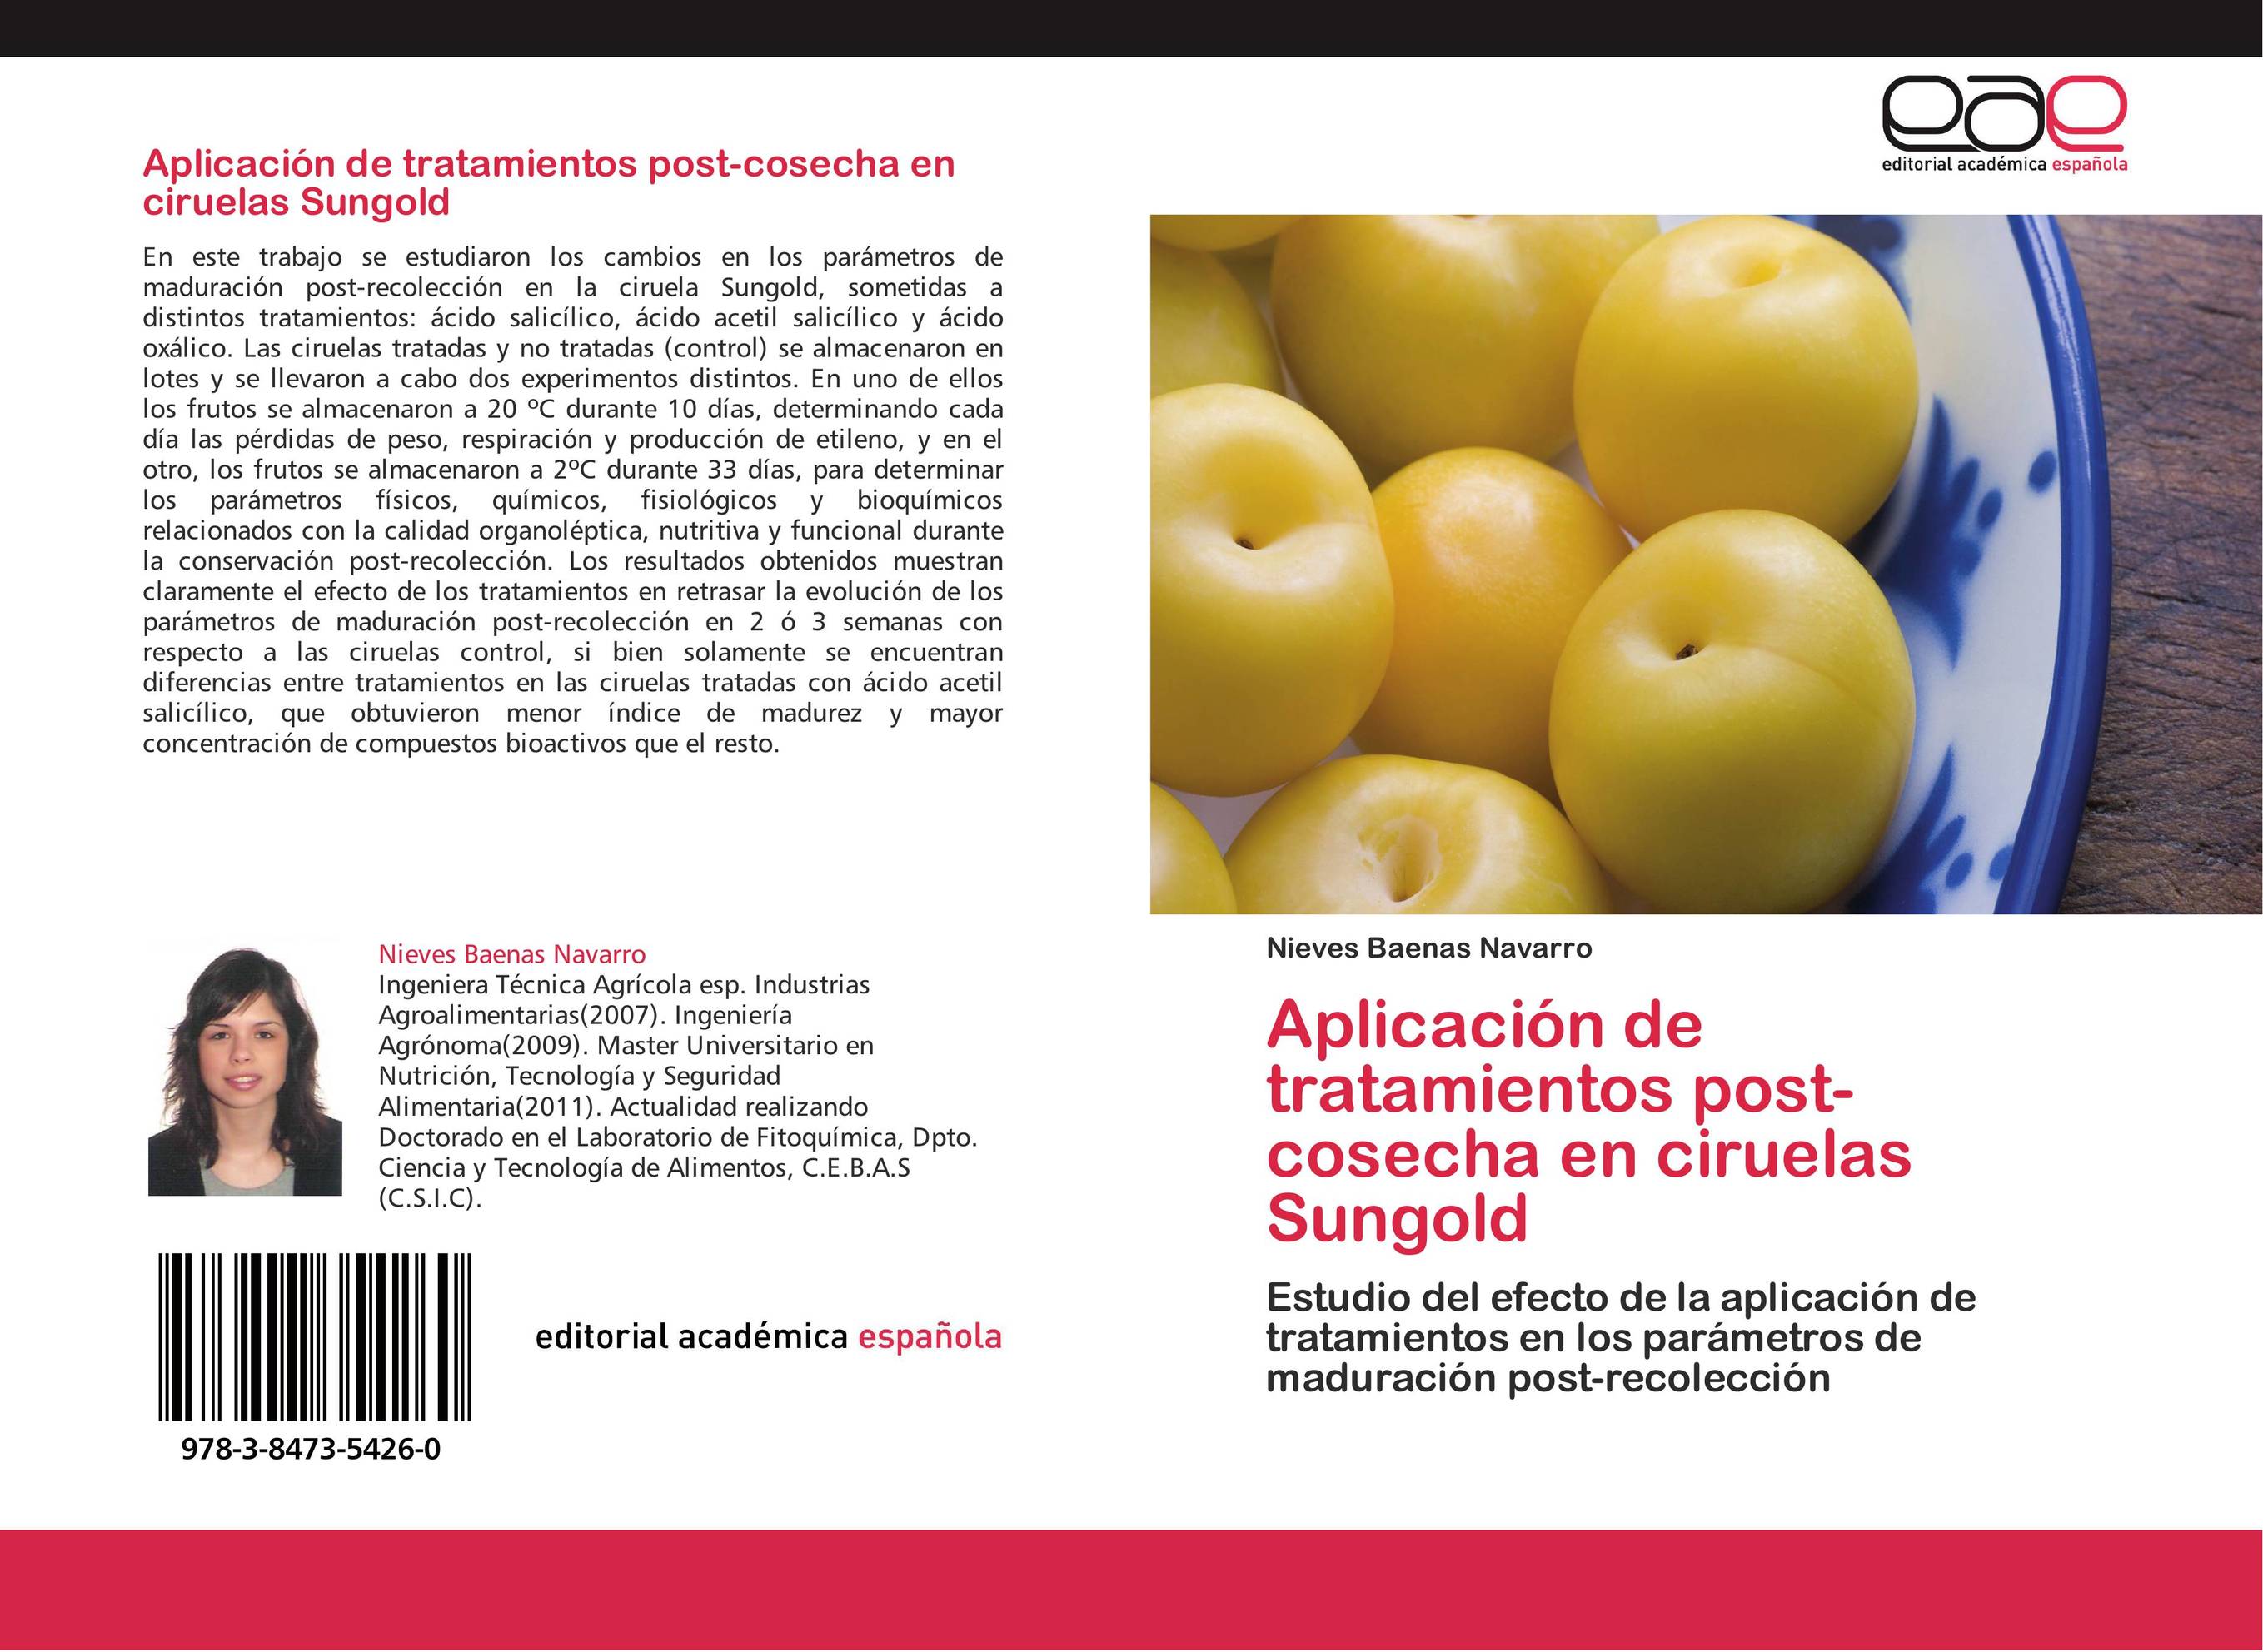 Aplicación de tratamientos post-cosecha en ciruelas Sungold